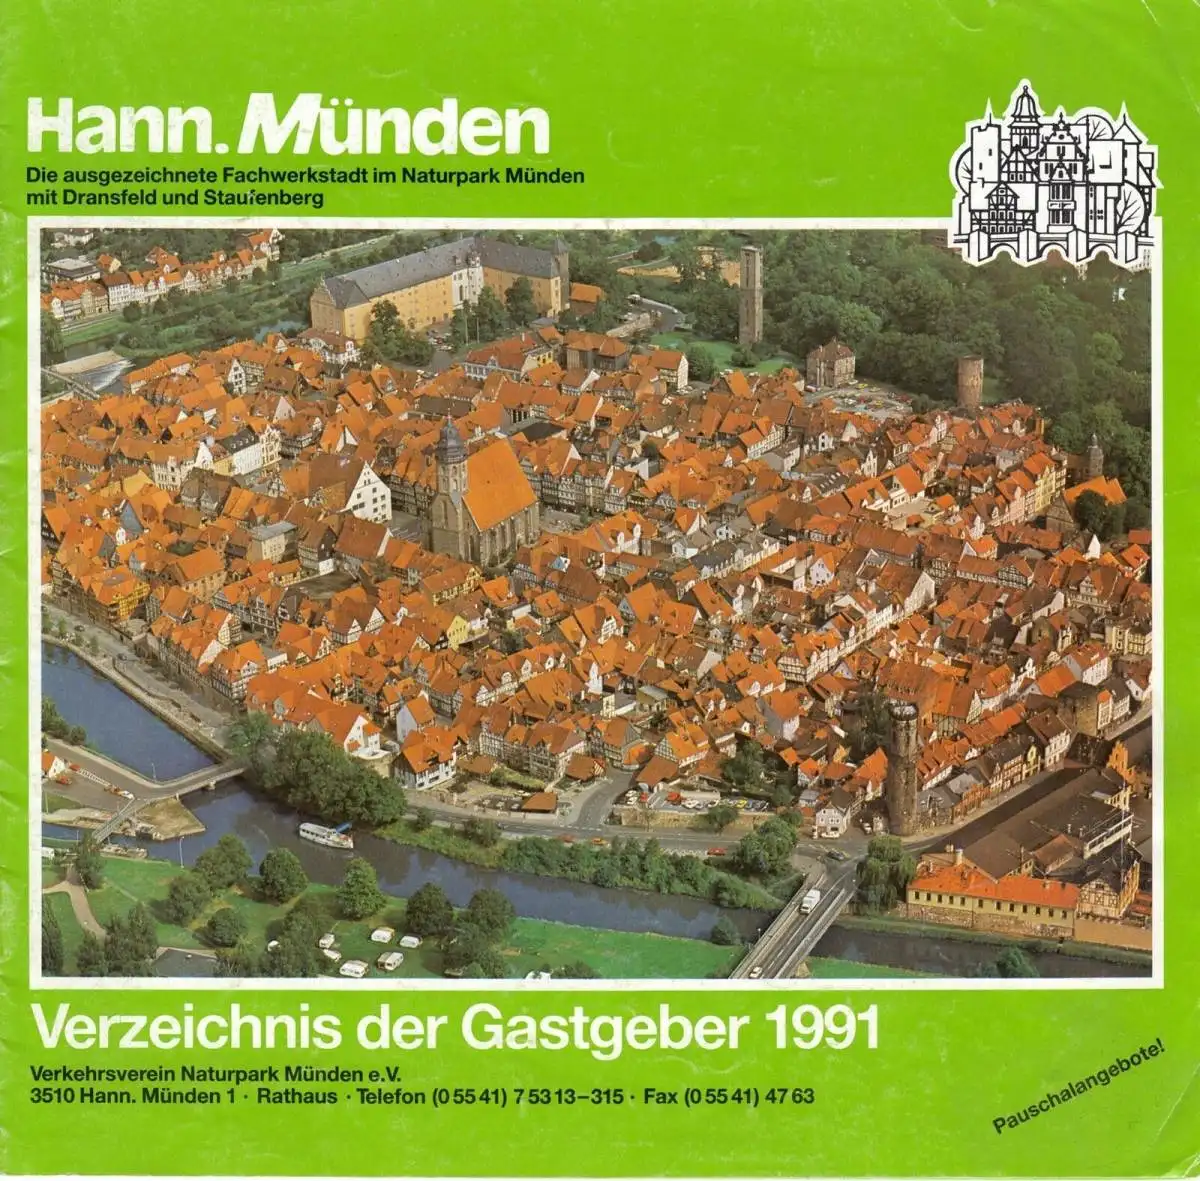 Hann. Münden, Gastgeberverzeichnis 1991